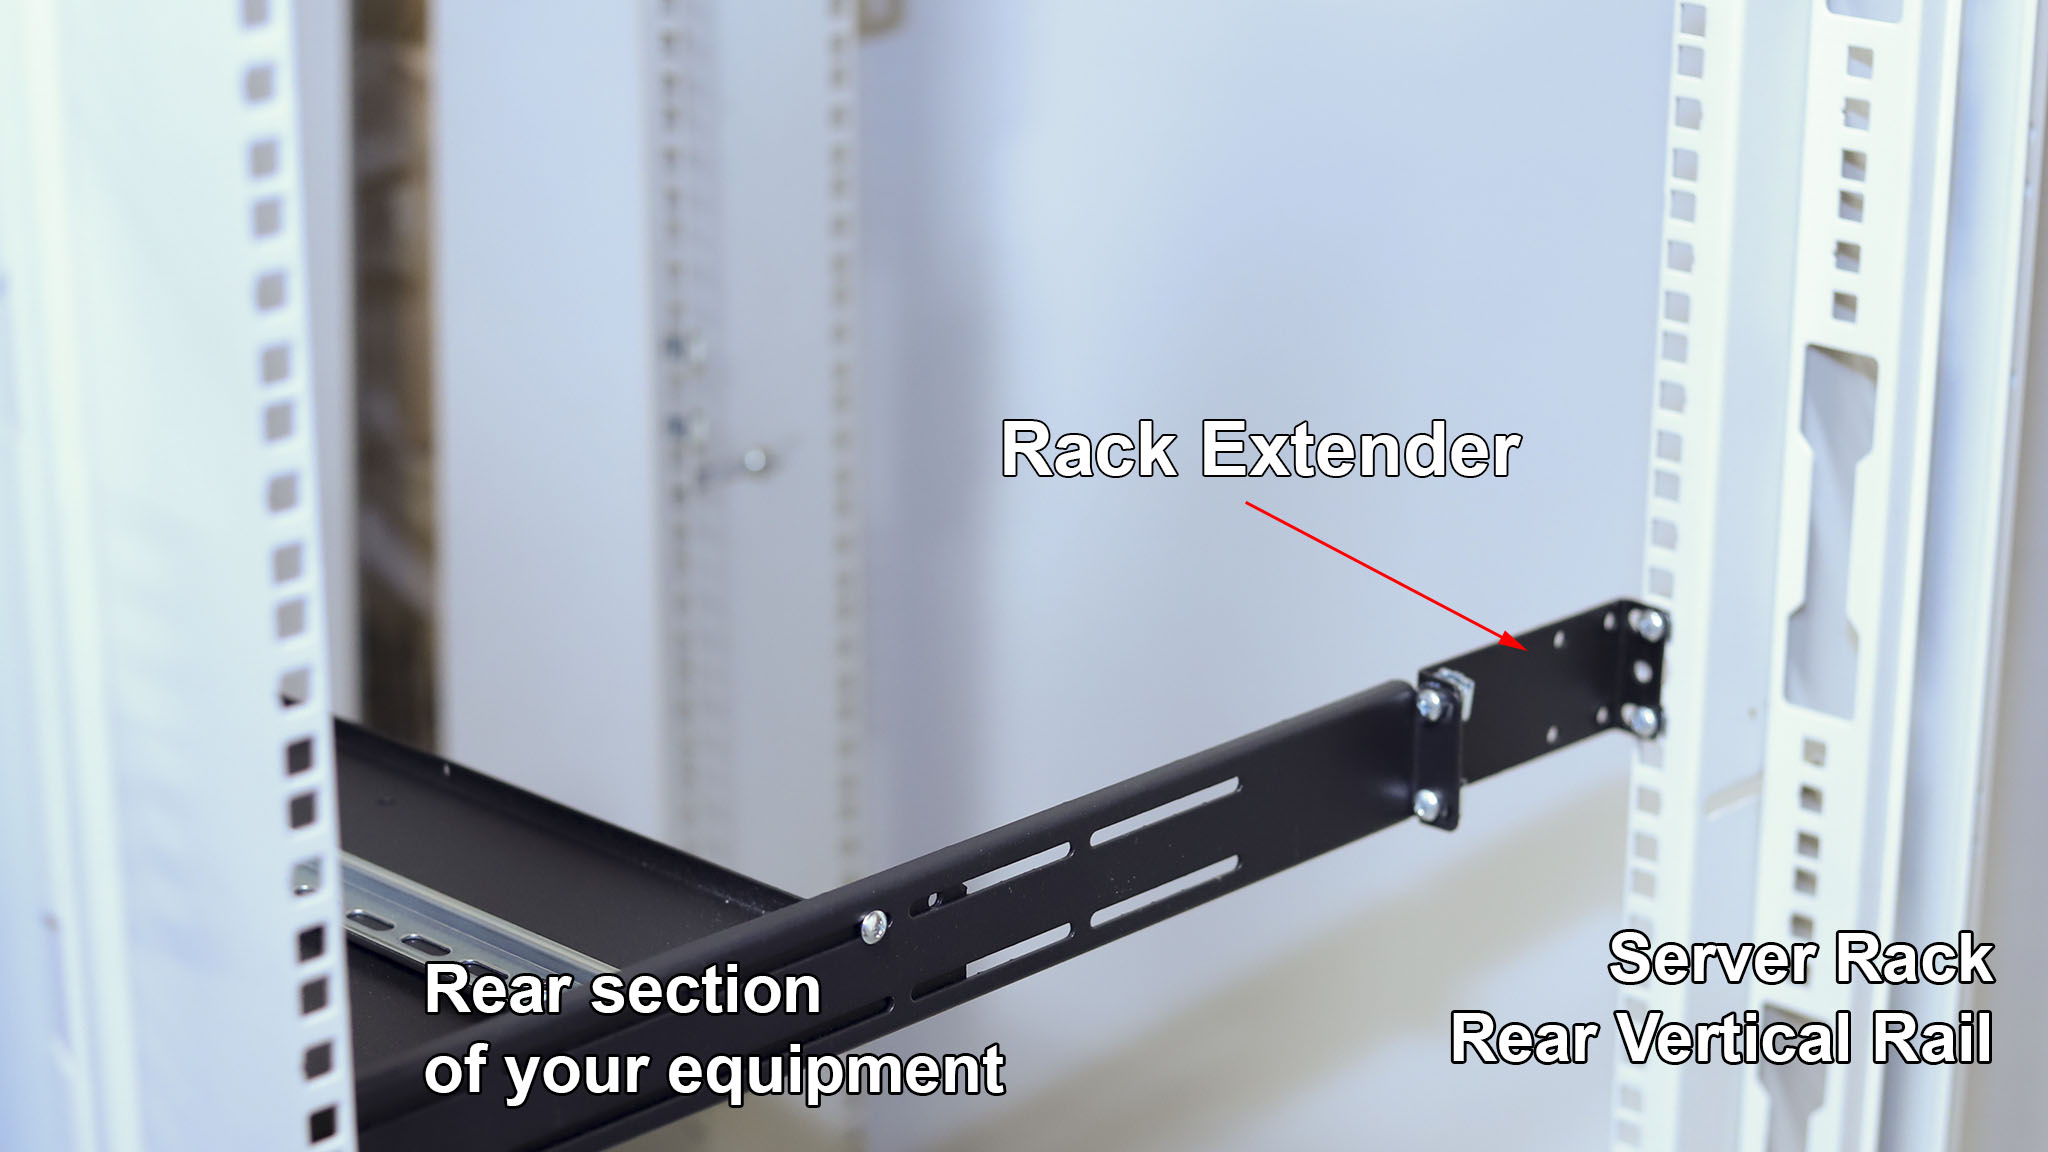 What is IAB103V10-1U rack extender